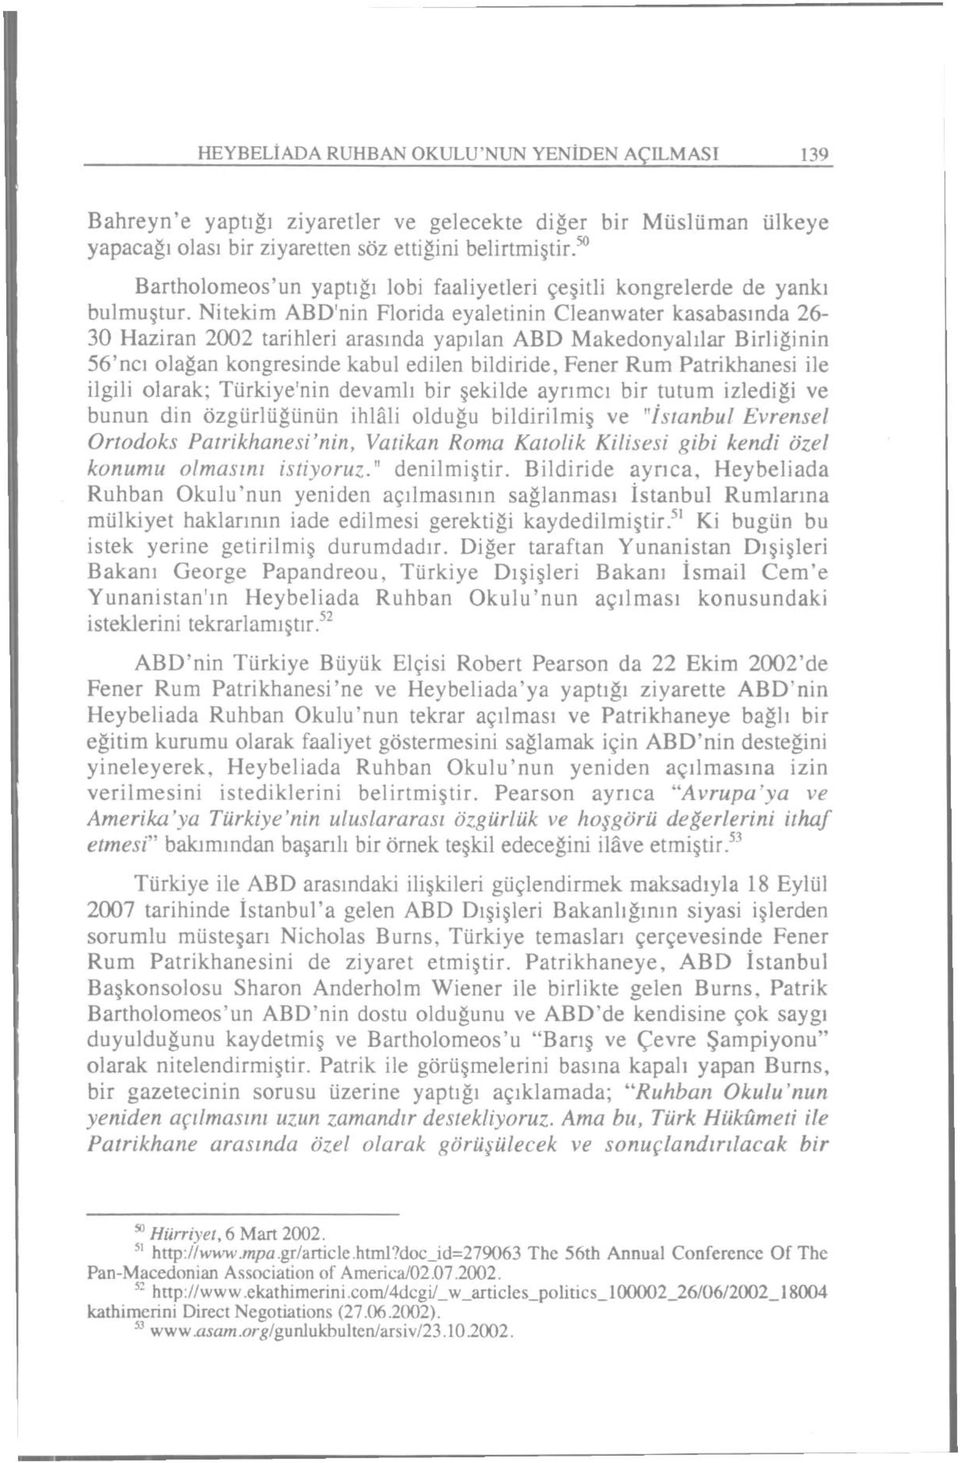 Nitekim ABD'nin Florida eyaletinin Cleanwater kasabasında 26-30 Haziran 2002 tarihleri arasında yapılan ABD Makedonyalılar Birliğinin 56'ncı olağan kongresinde kabul edilen bildiride, Fener Rum